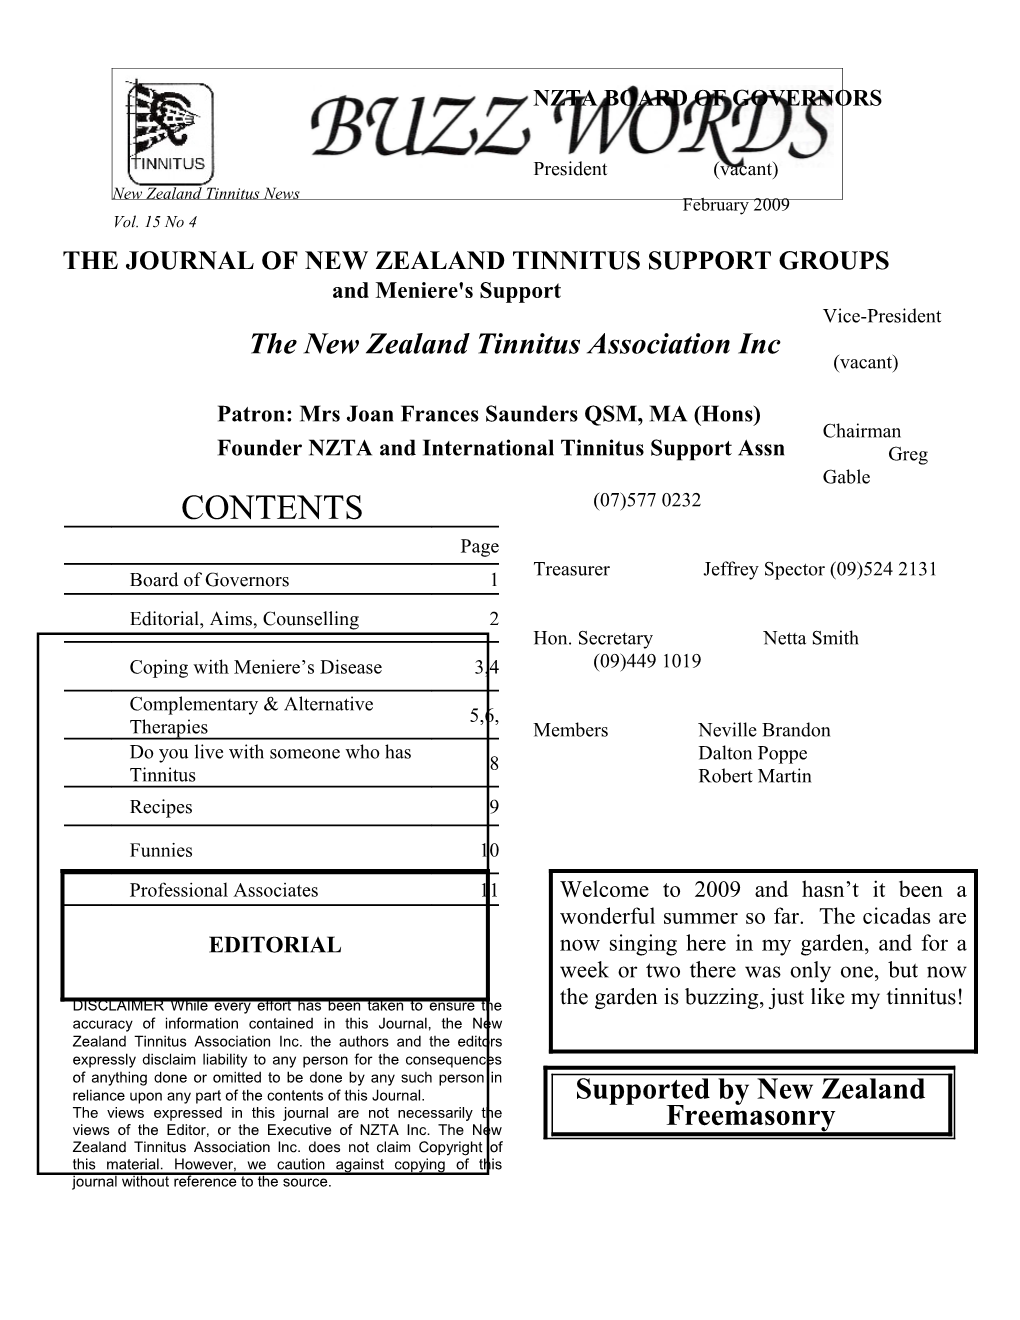 The New Zealand Tinnitus Association Inc